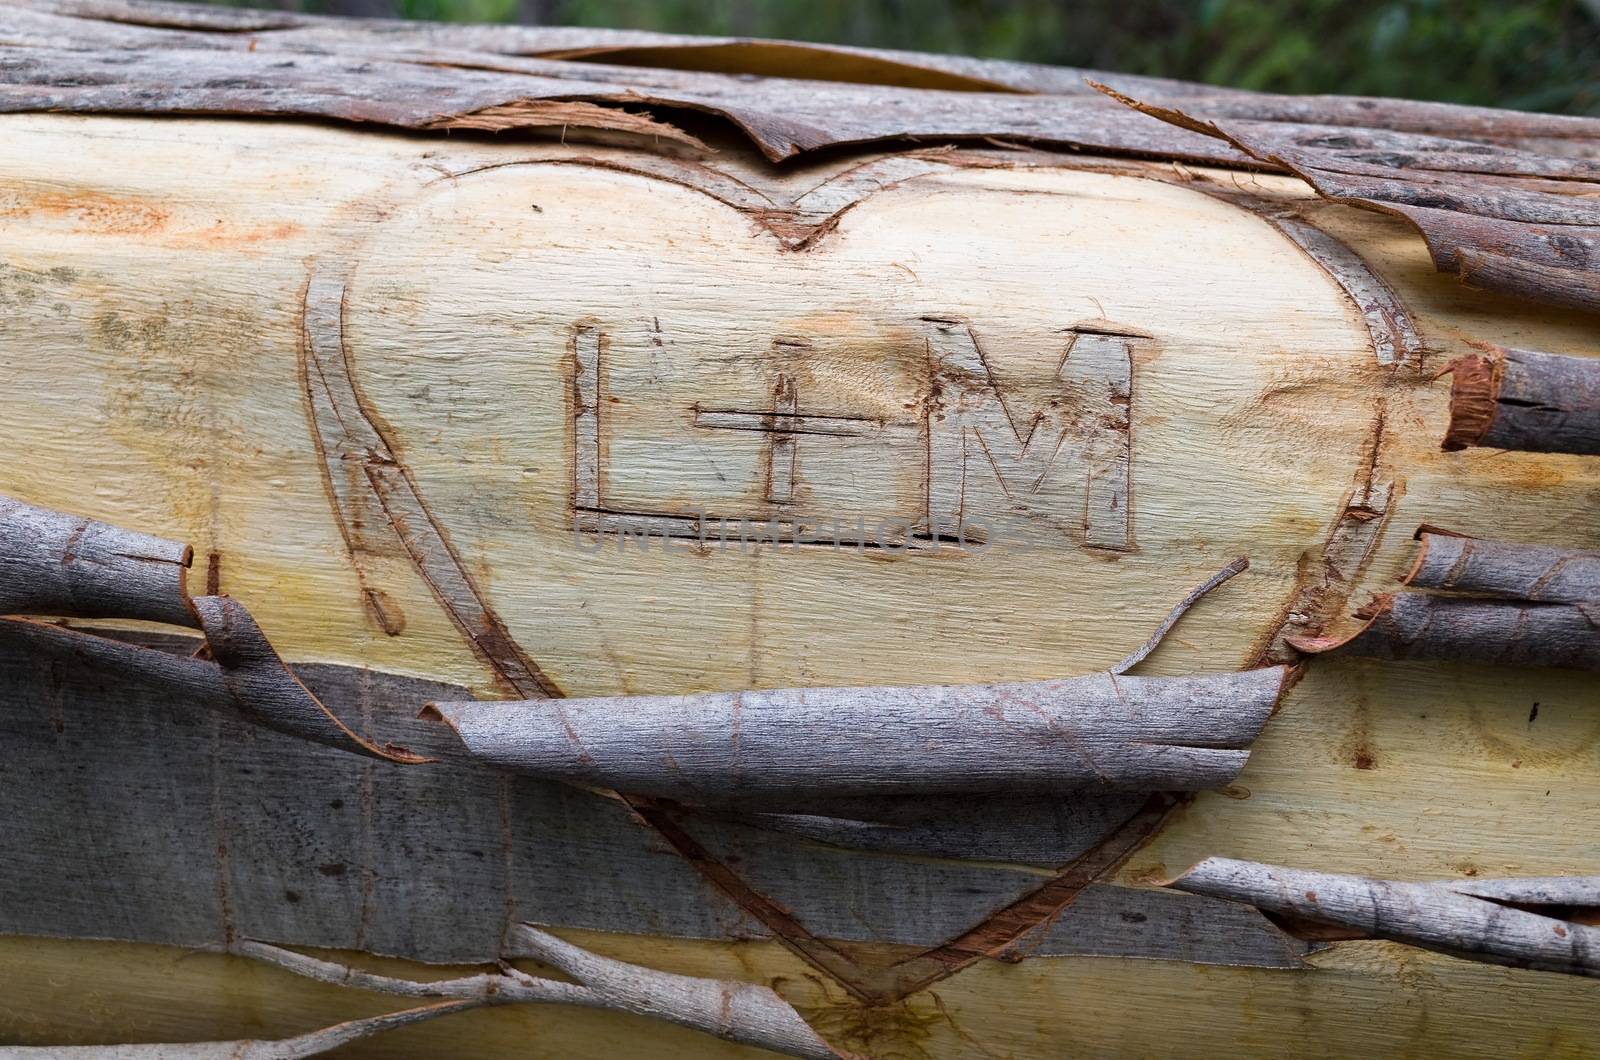 Lovers' Initials on Fallen Eucalyptus by jaaske